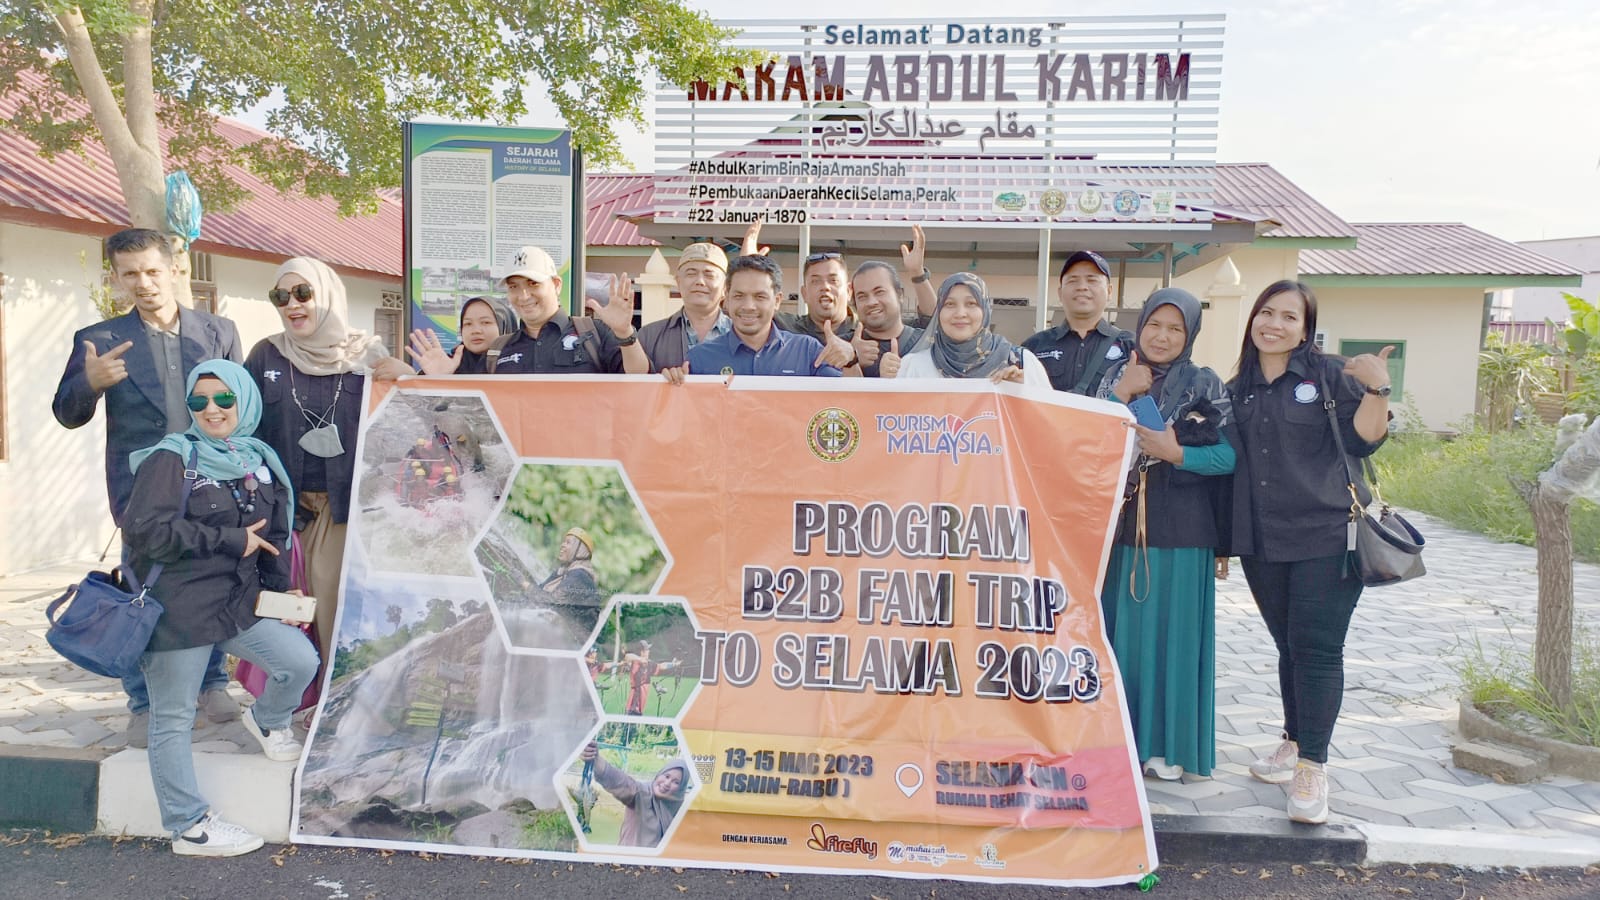 Jejak Ulama Sumatera Di Selama, Perak